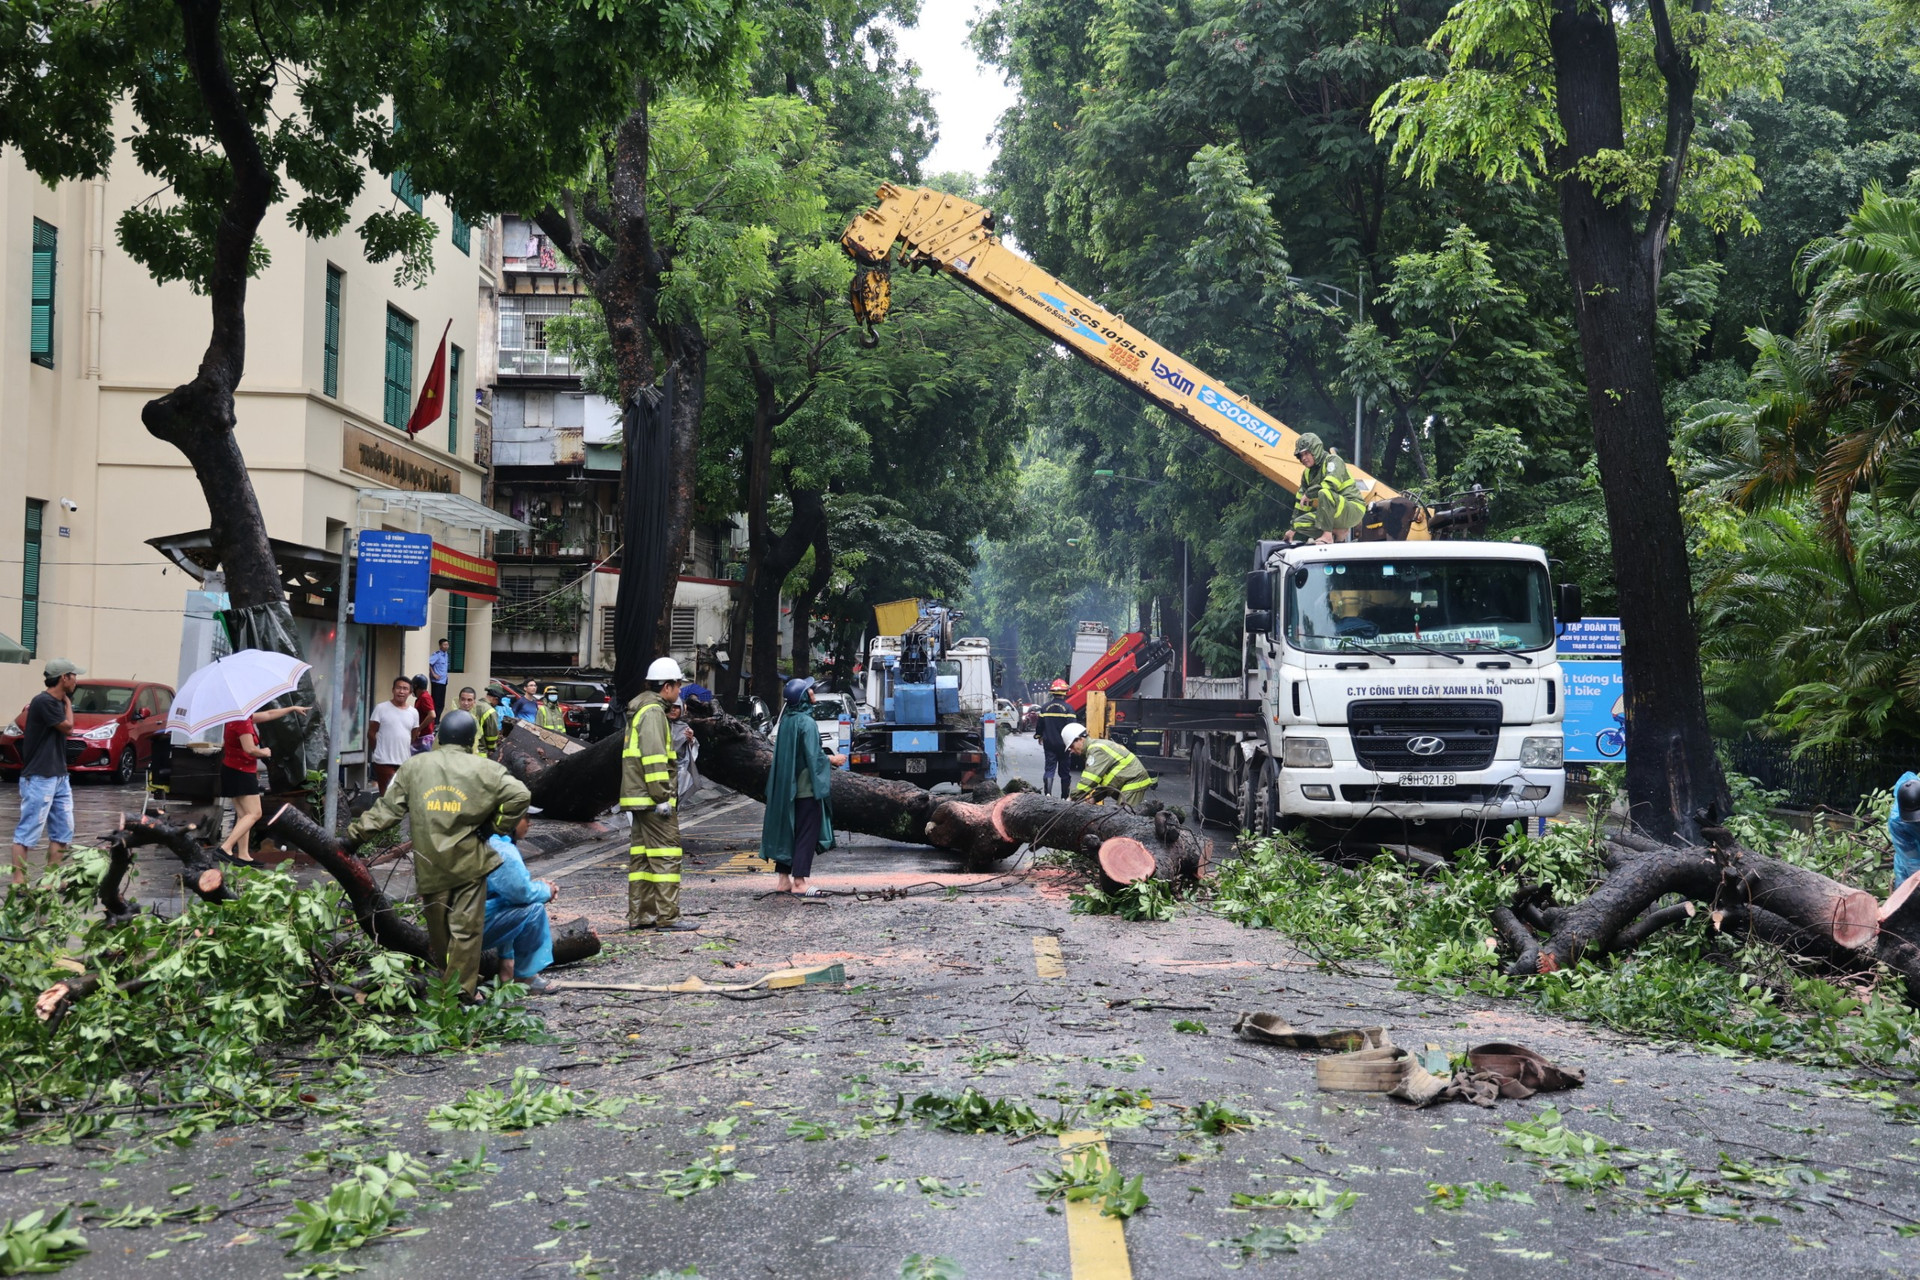 Lực lượng Cảnh sát PCCC&CNCH Công an quận Hai Bà Trưng điều động 1 xe chữa cháy, 1 xe cứu nạn cứu hộ xuống hiện trường phối hợp với Công ty TNHH MTV Công viên cây xanh Hà Nội để dọn dẹp, cắt bỏ cây